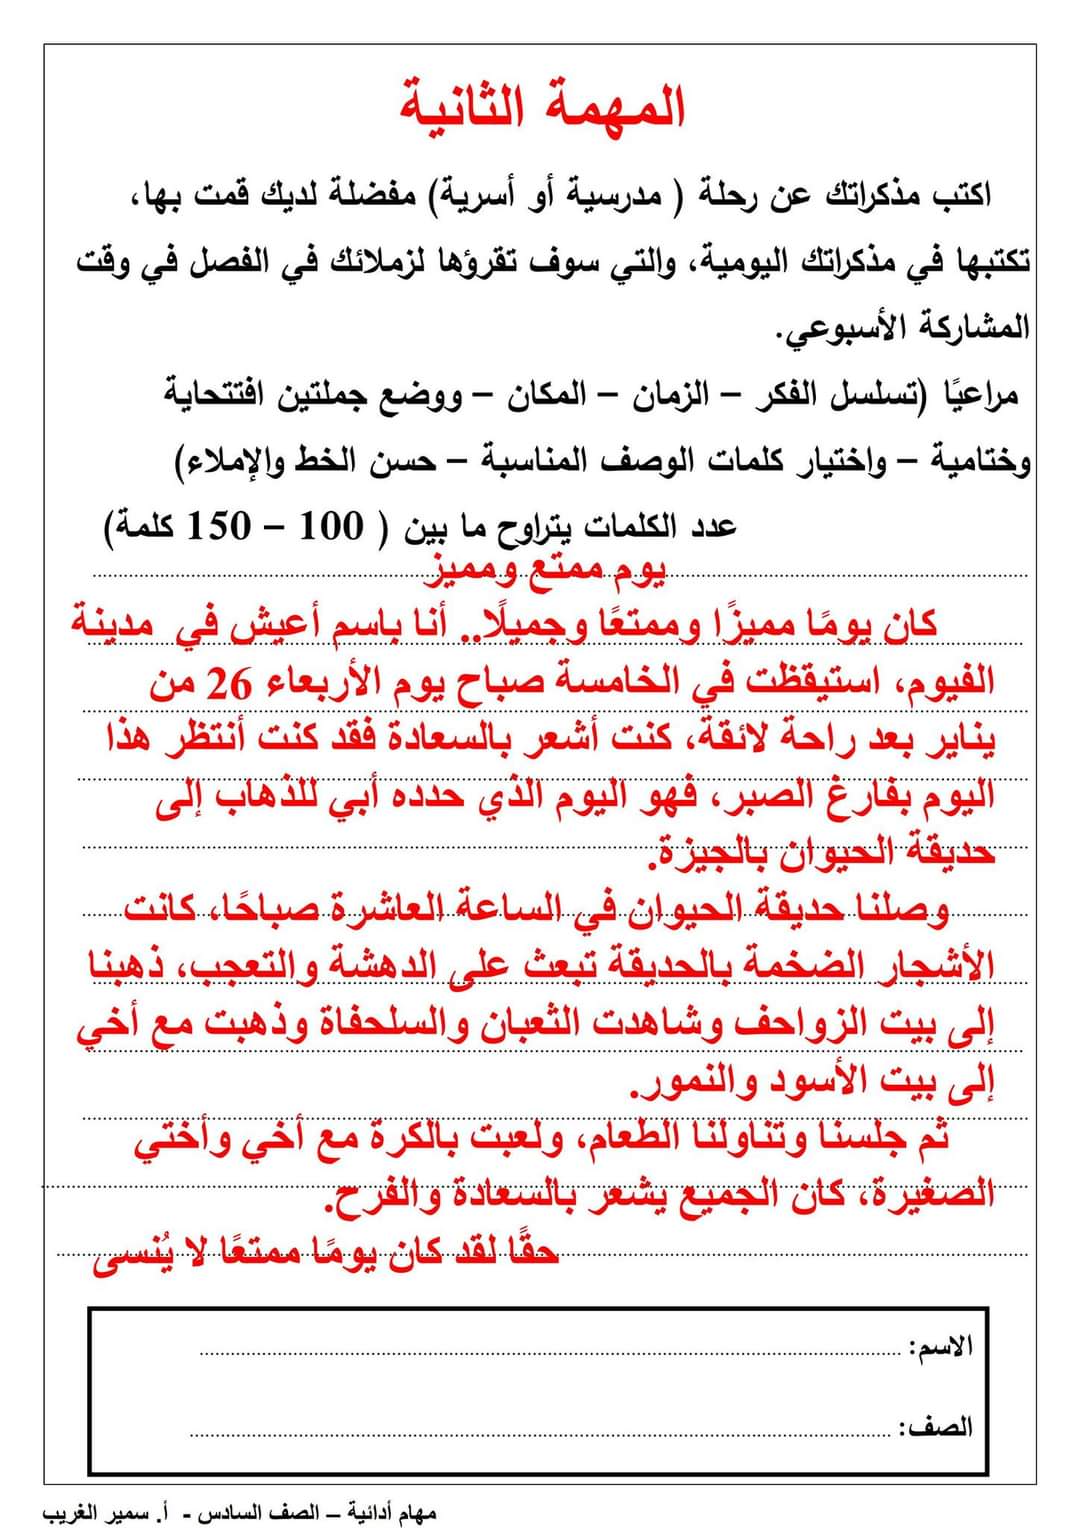 اجابات المهام الادائية الرسمية الصف السادس الابتدائي مدارس عربي الترم الاول ٢٠٢٤